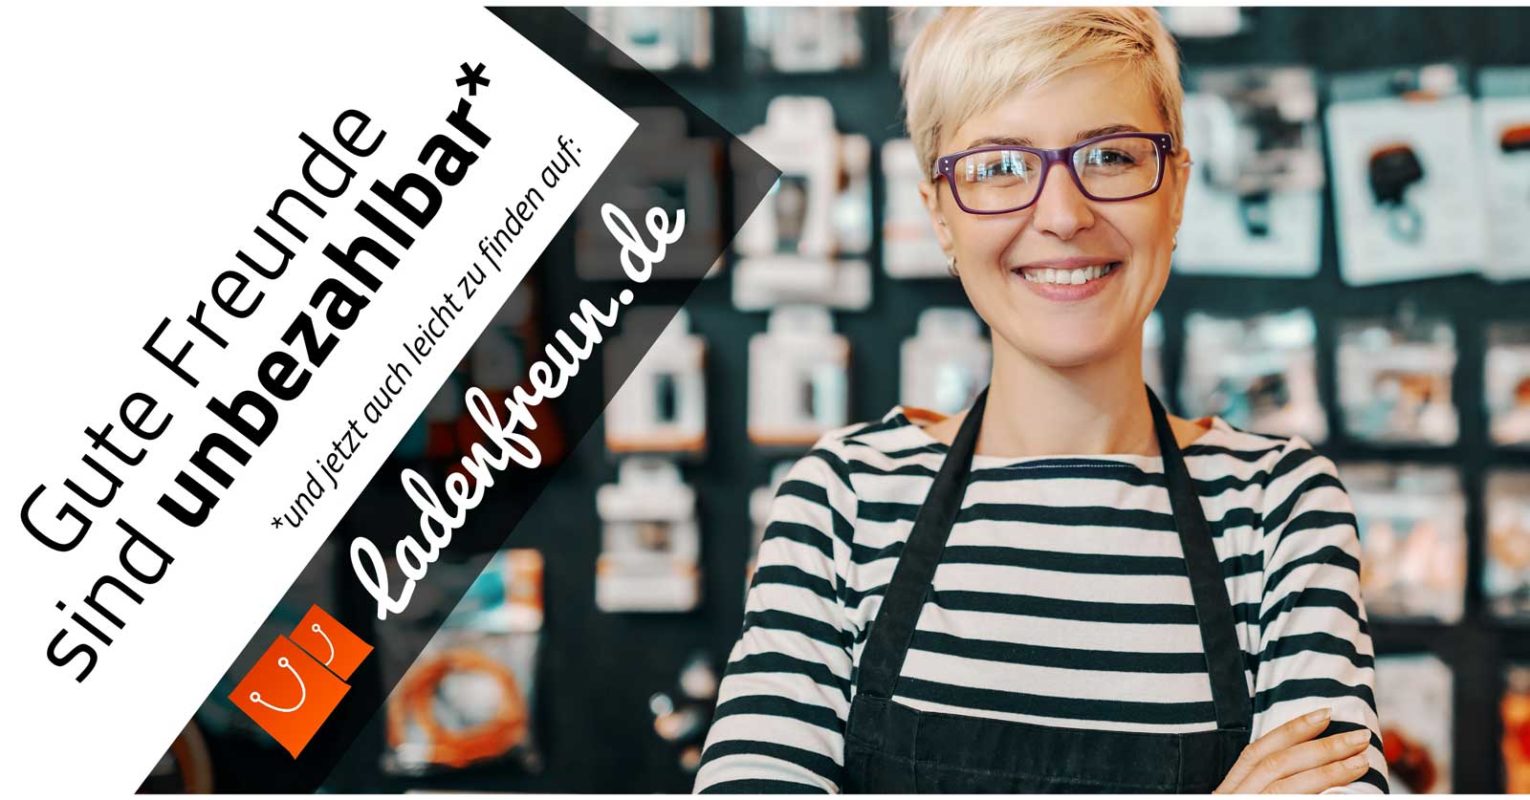 Startup Ladenfreun.de entwickelt Onlineshopping-Angebot für Lokalhandel